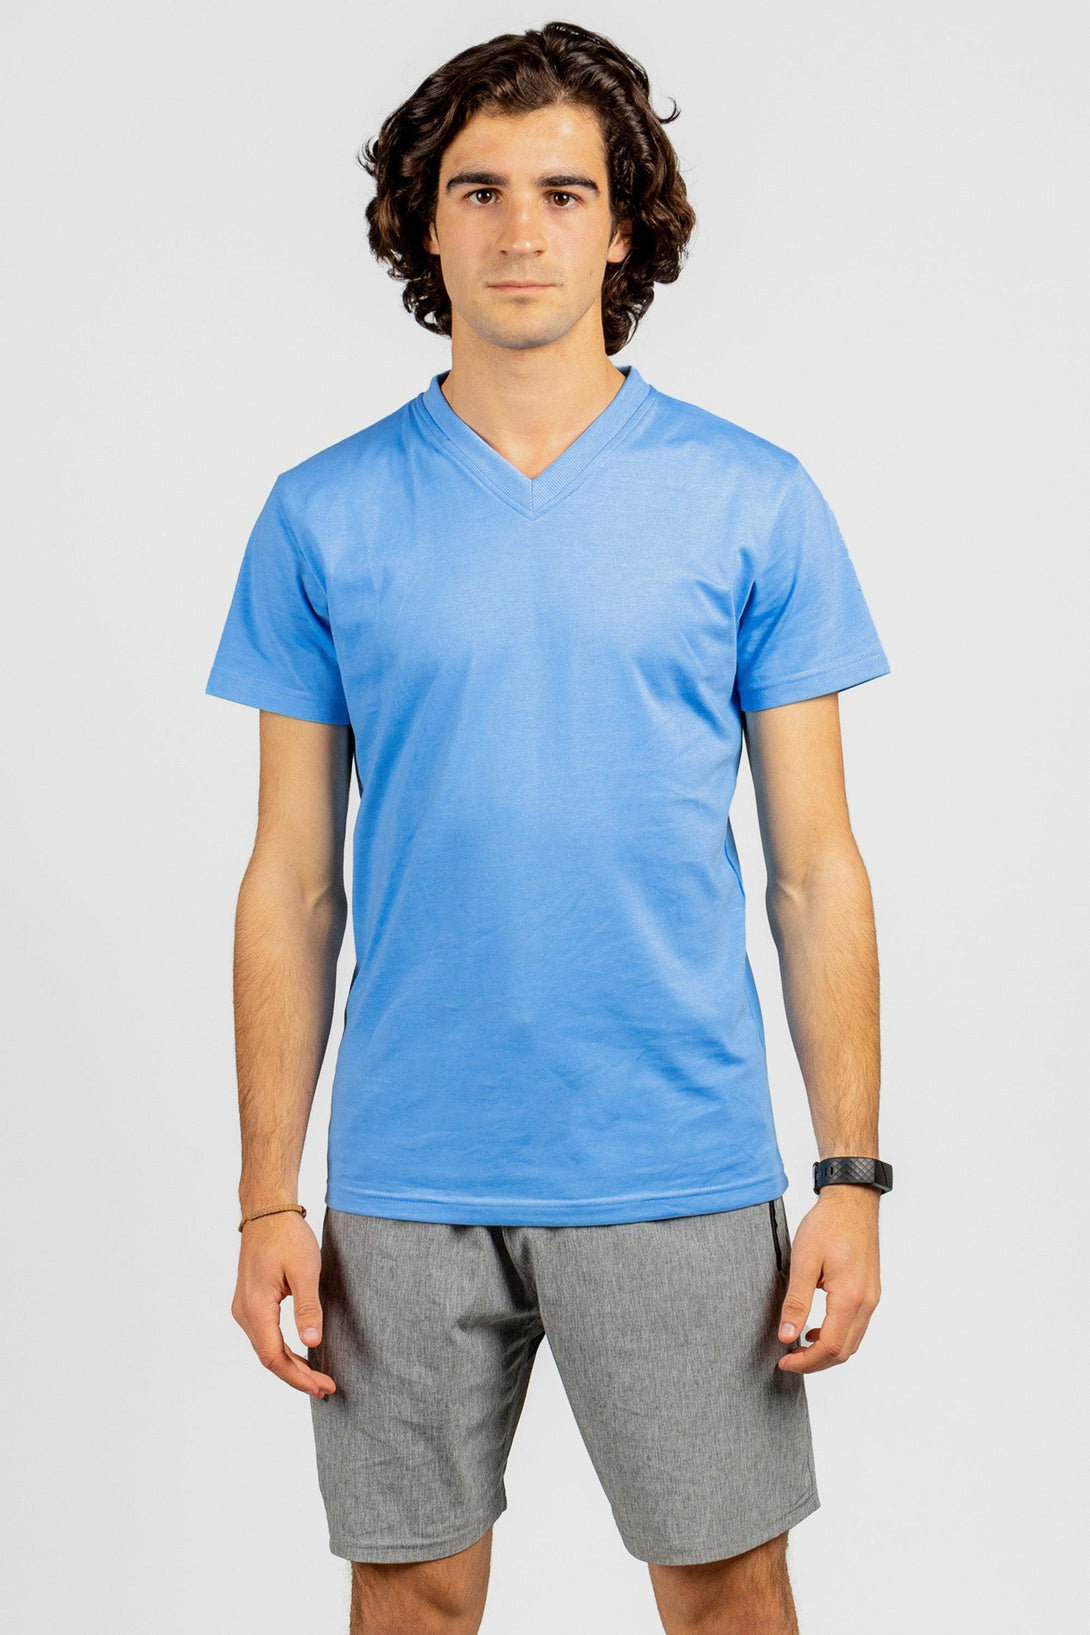 V-Neck T-Shirts | BLUE - NAVY - Pack of 6 - FTS